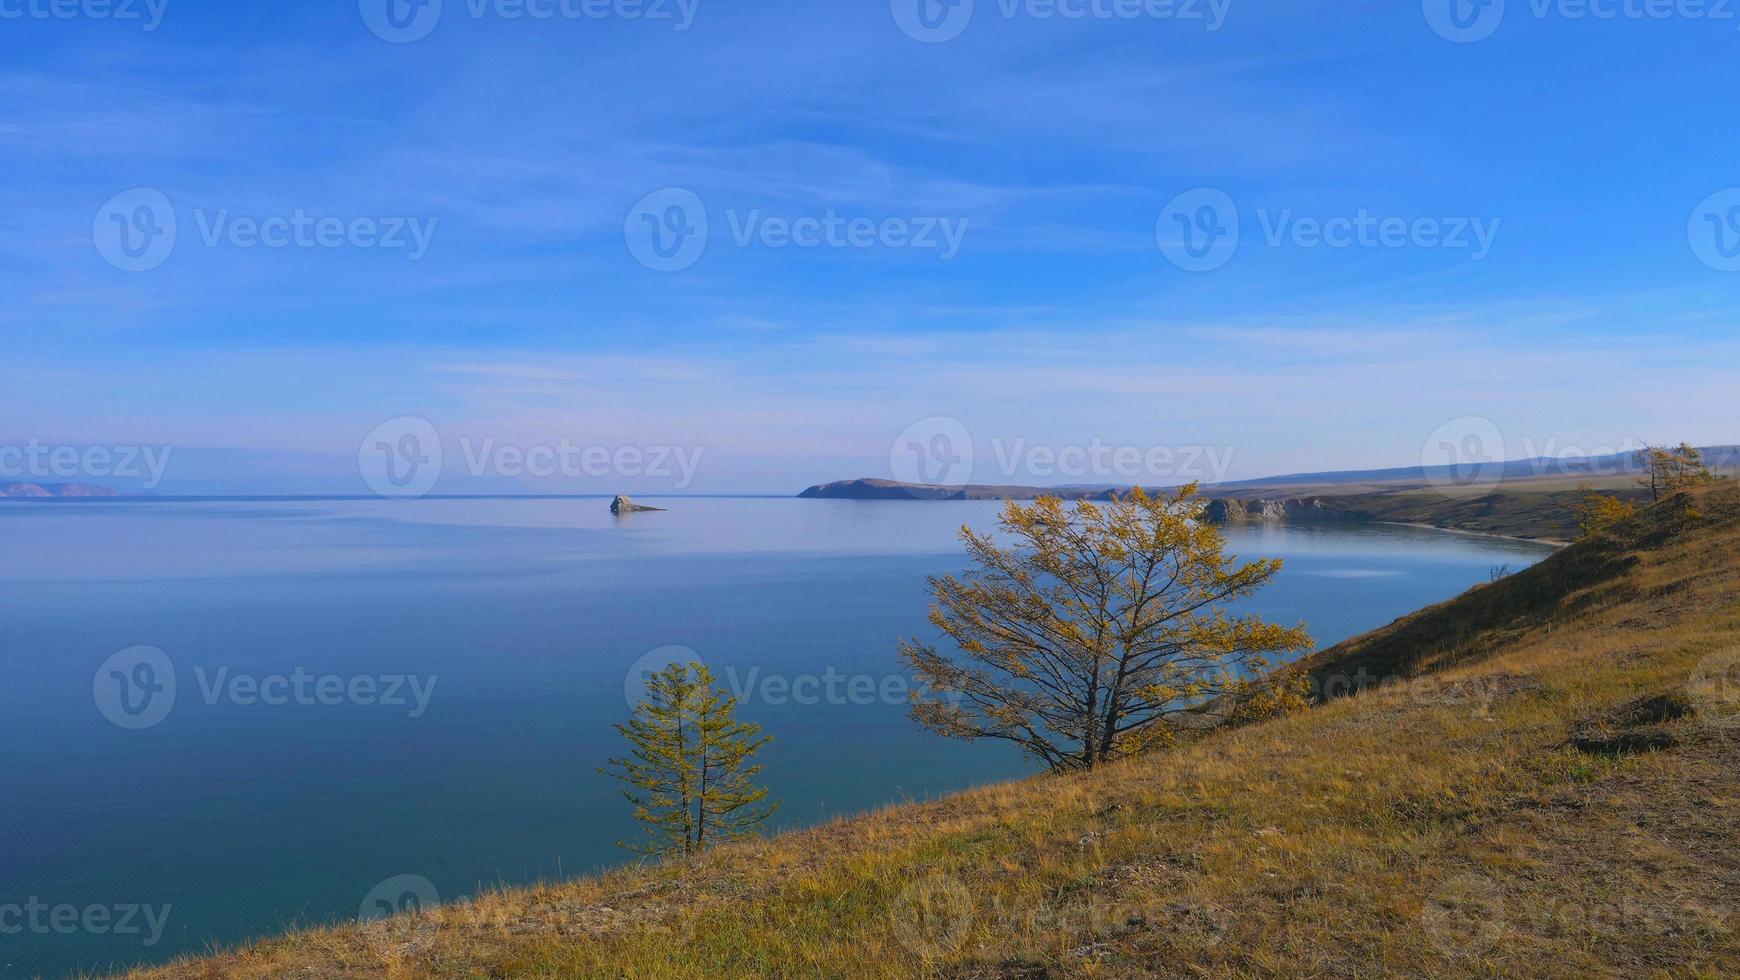 Ilha do Lago Baikal Olkhon em um dia ensolarado, Irkutsk, Rússia foto